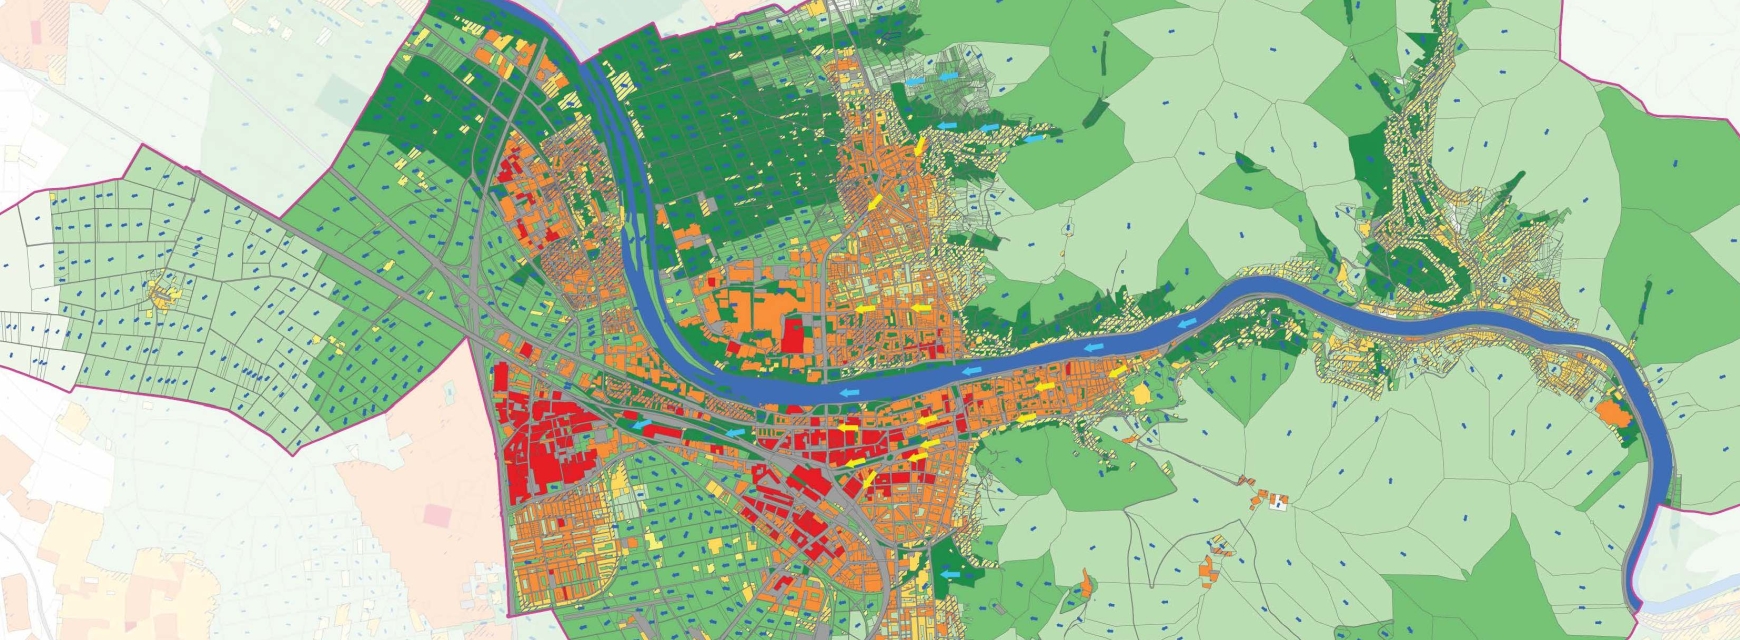 Klimaanalysekarte der Stadt Heidelberg